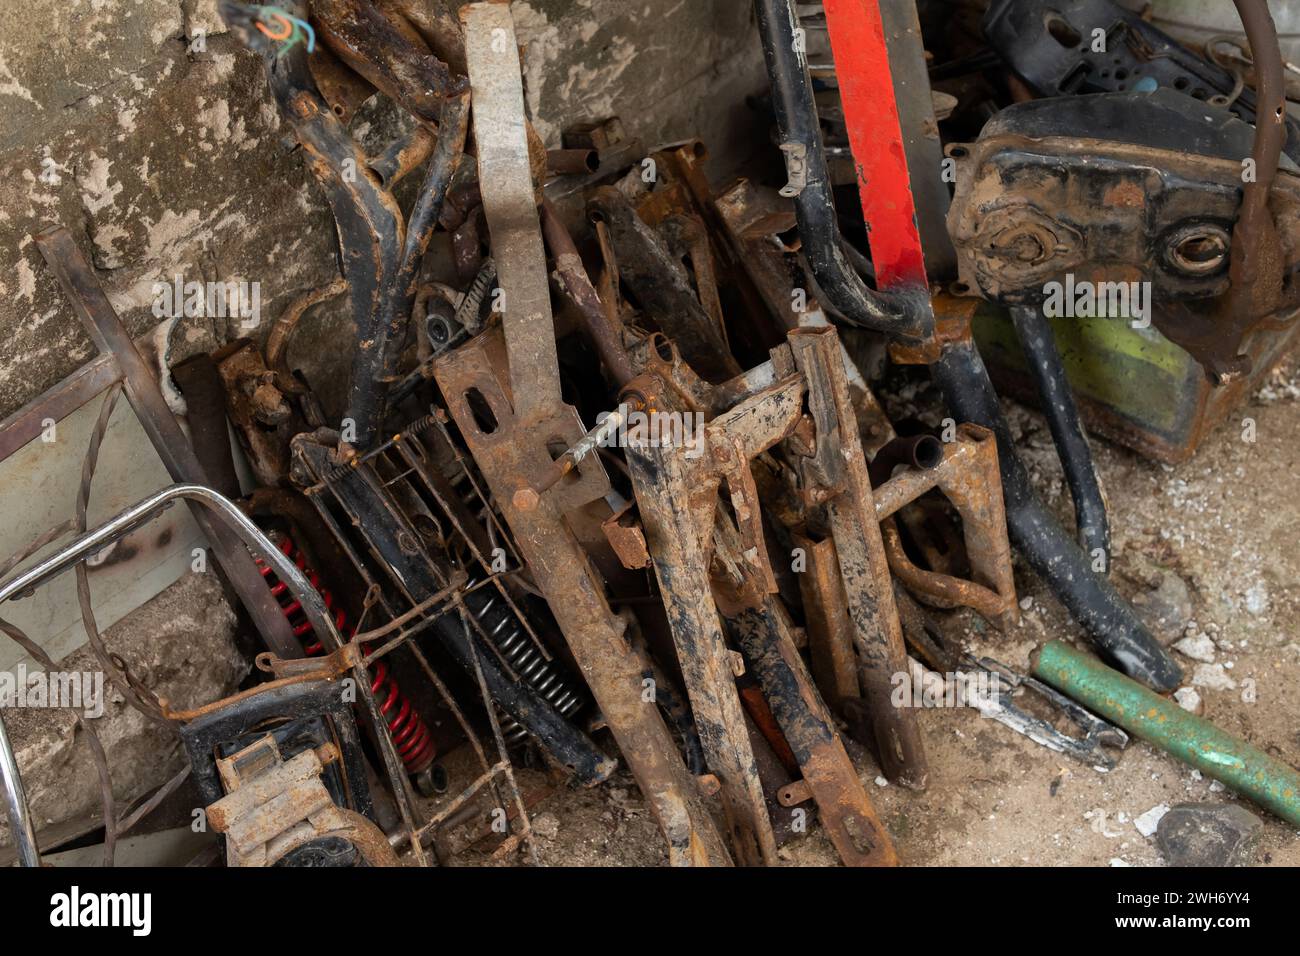 Ein Haufen Schrottmotoren im Müllhaufen. Metallabfälle, die zur Verwertung anfallen Stockfoto